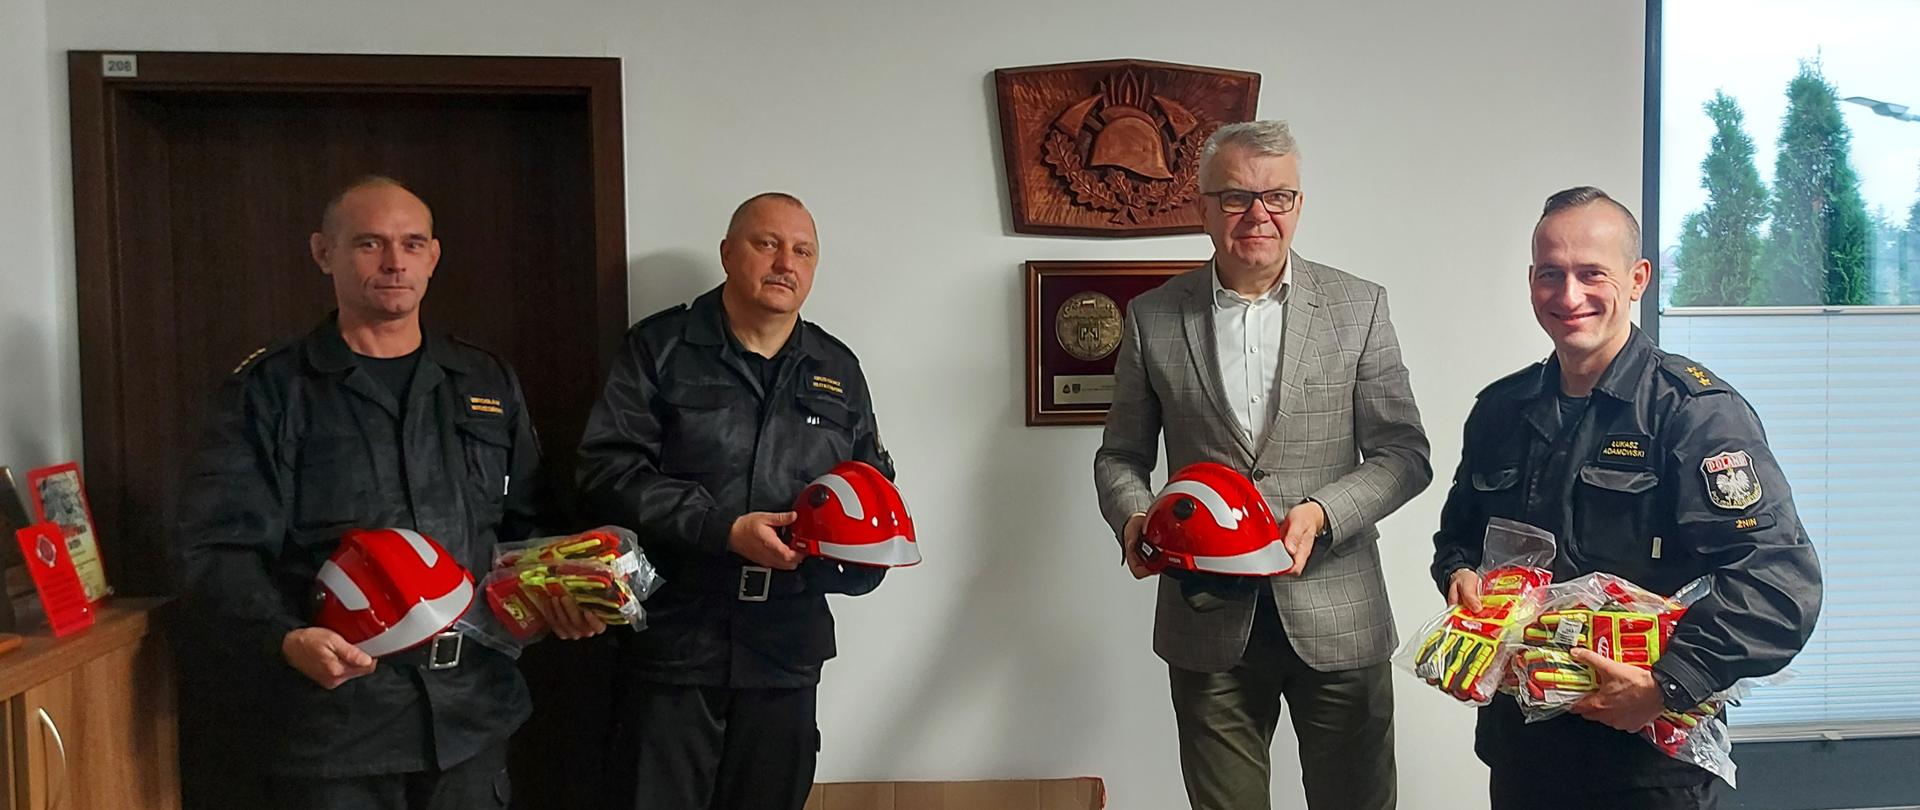 Zdjęcie przedstawia dyrektora firmy Novago przekazującego środki ochrony indywidualnej dla żnińskich strażaków w postaci rękawic technicznych oraz hełmów Komendantowi Powiatowemu i Dowódcom Jednostki Ratowniczo-Gaśniczej